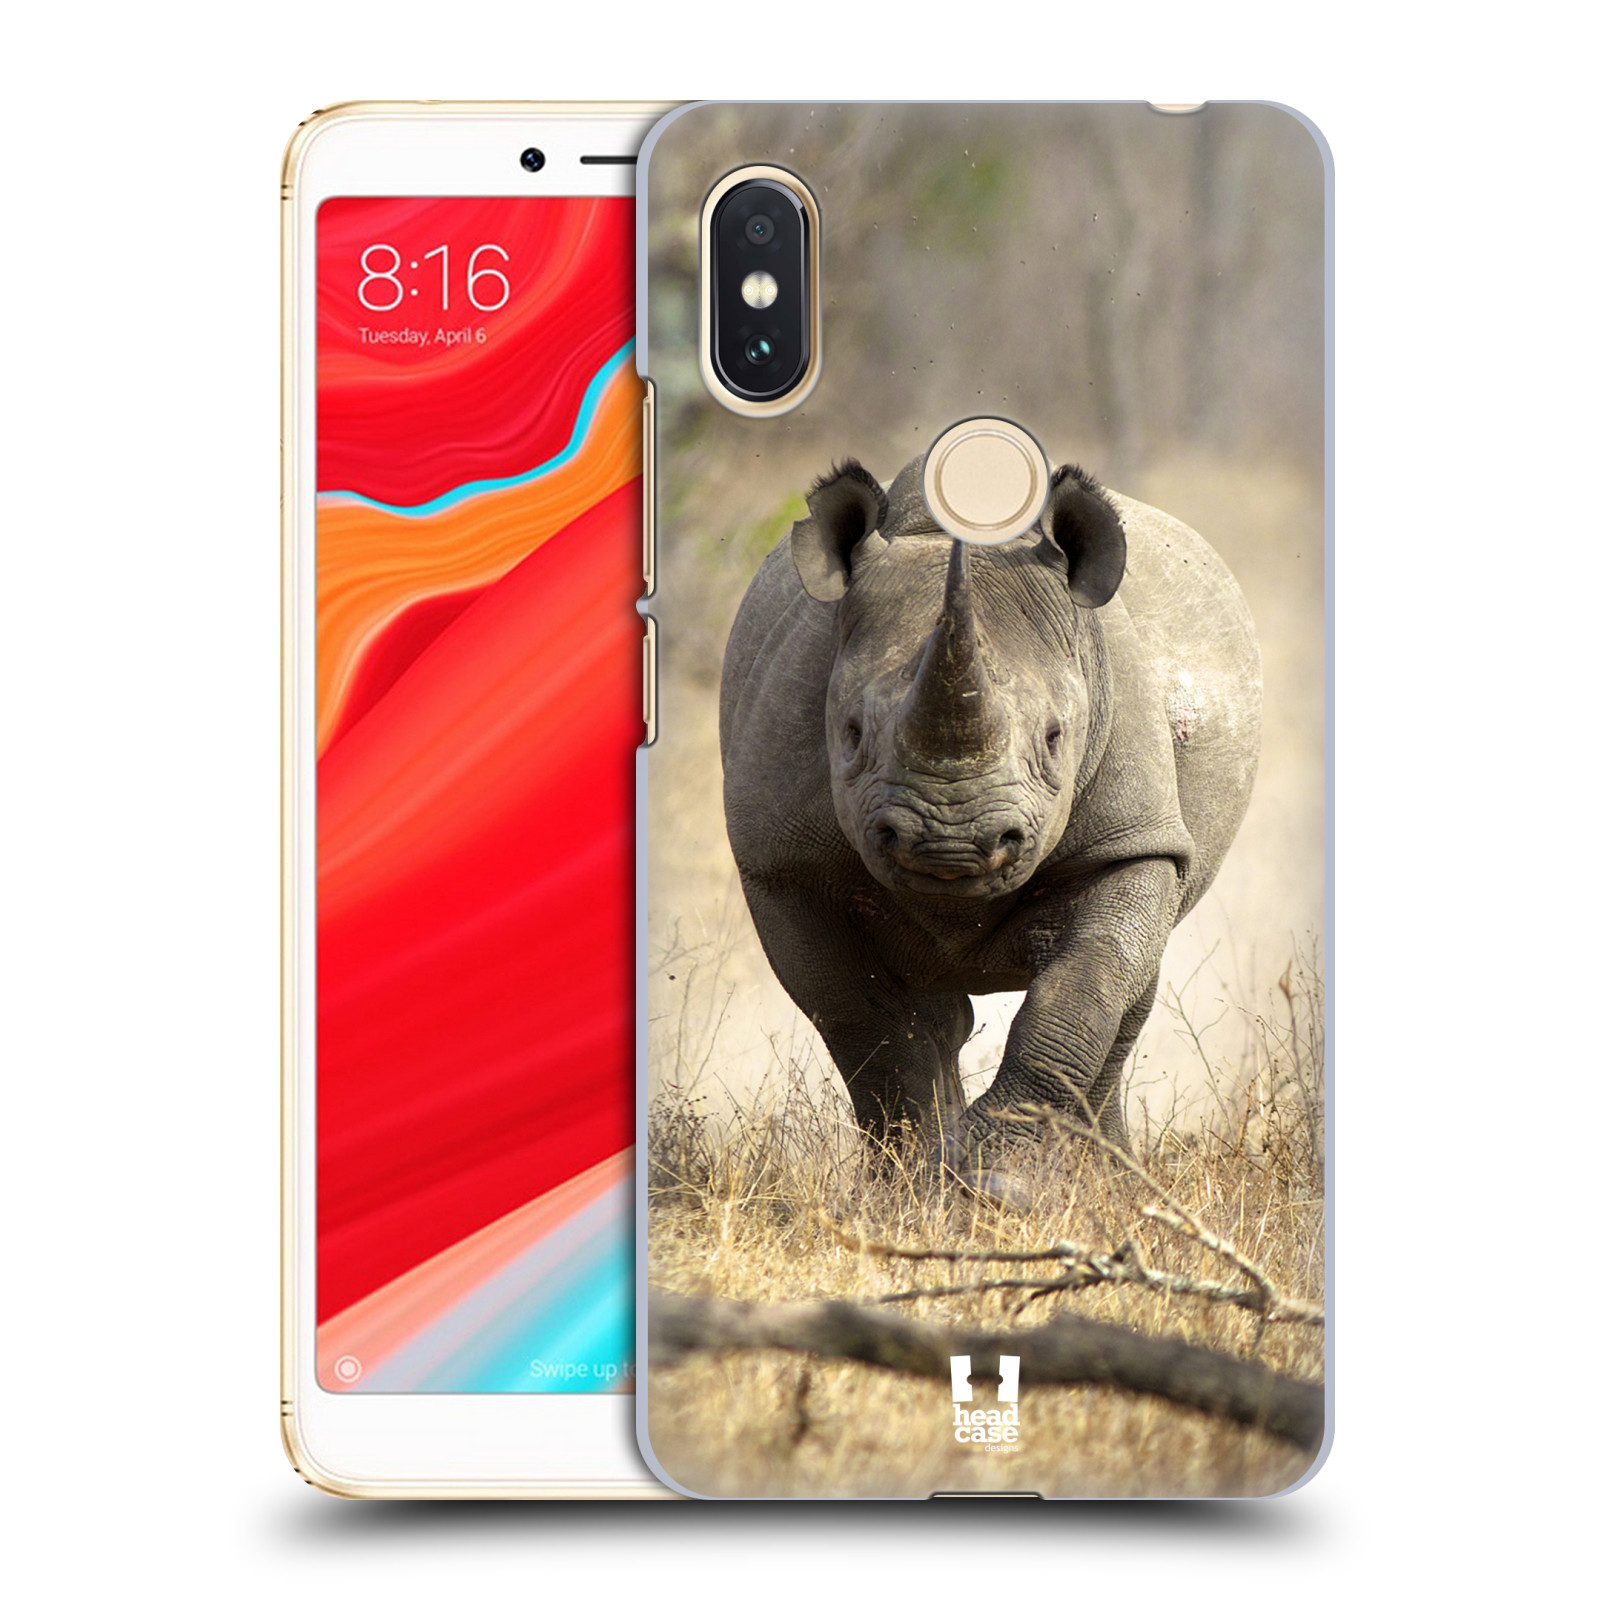 HEAD CASE plastový obal na mobil Xiaomi Redmi S2 vzor Divočina, Divoký život a zvířata foto AFRIKA BĚŽÍCÍ NOSOROŽEC